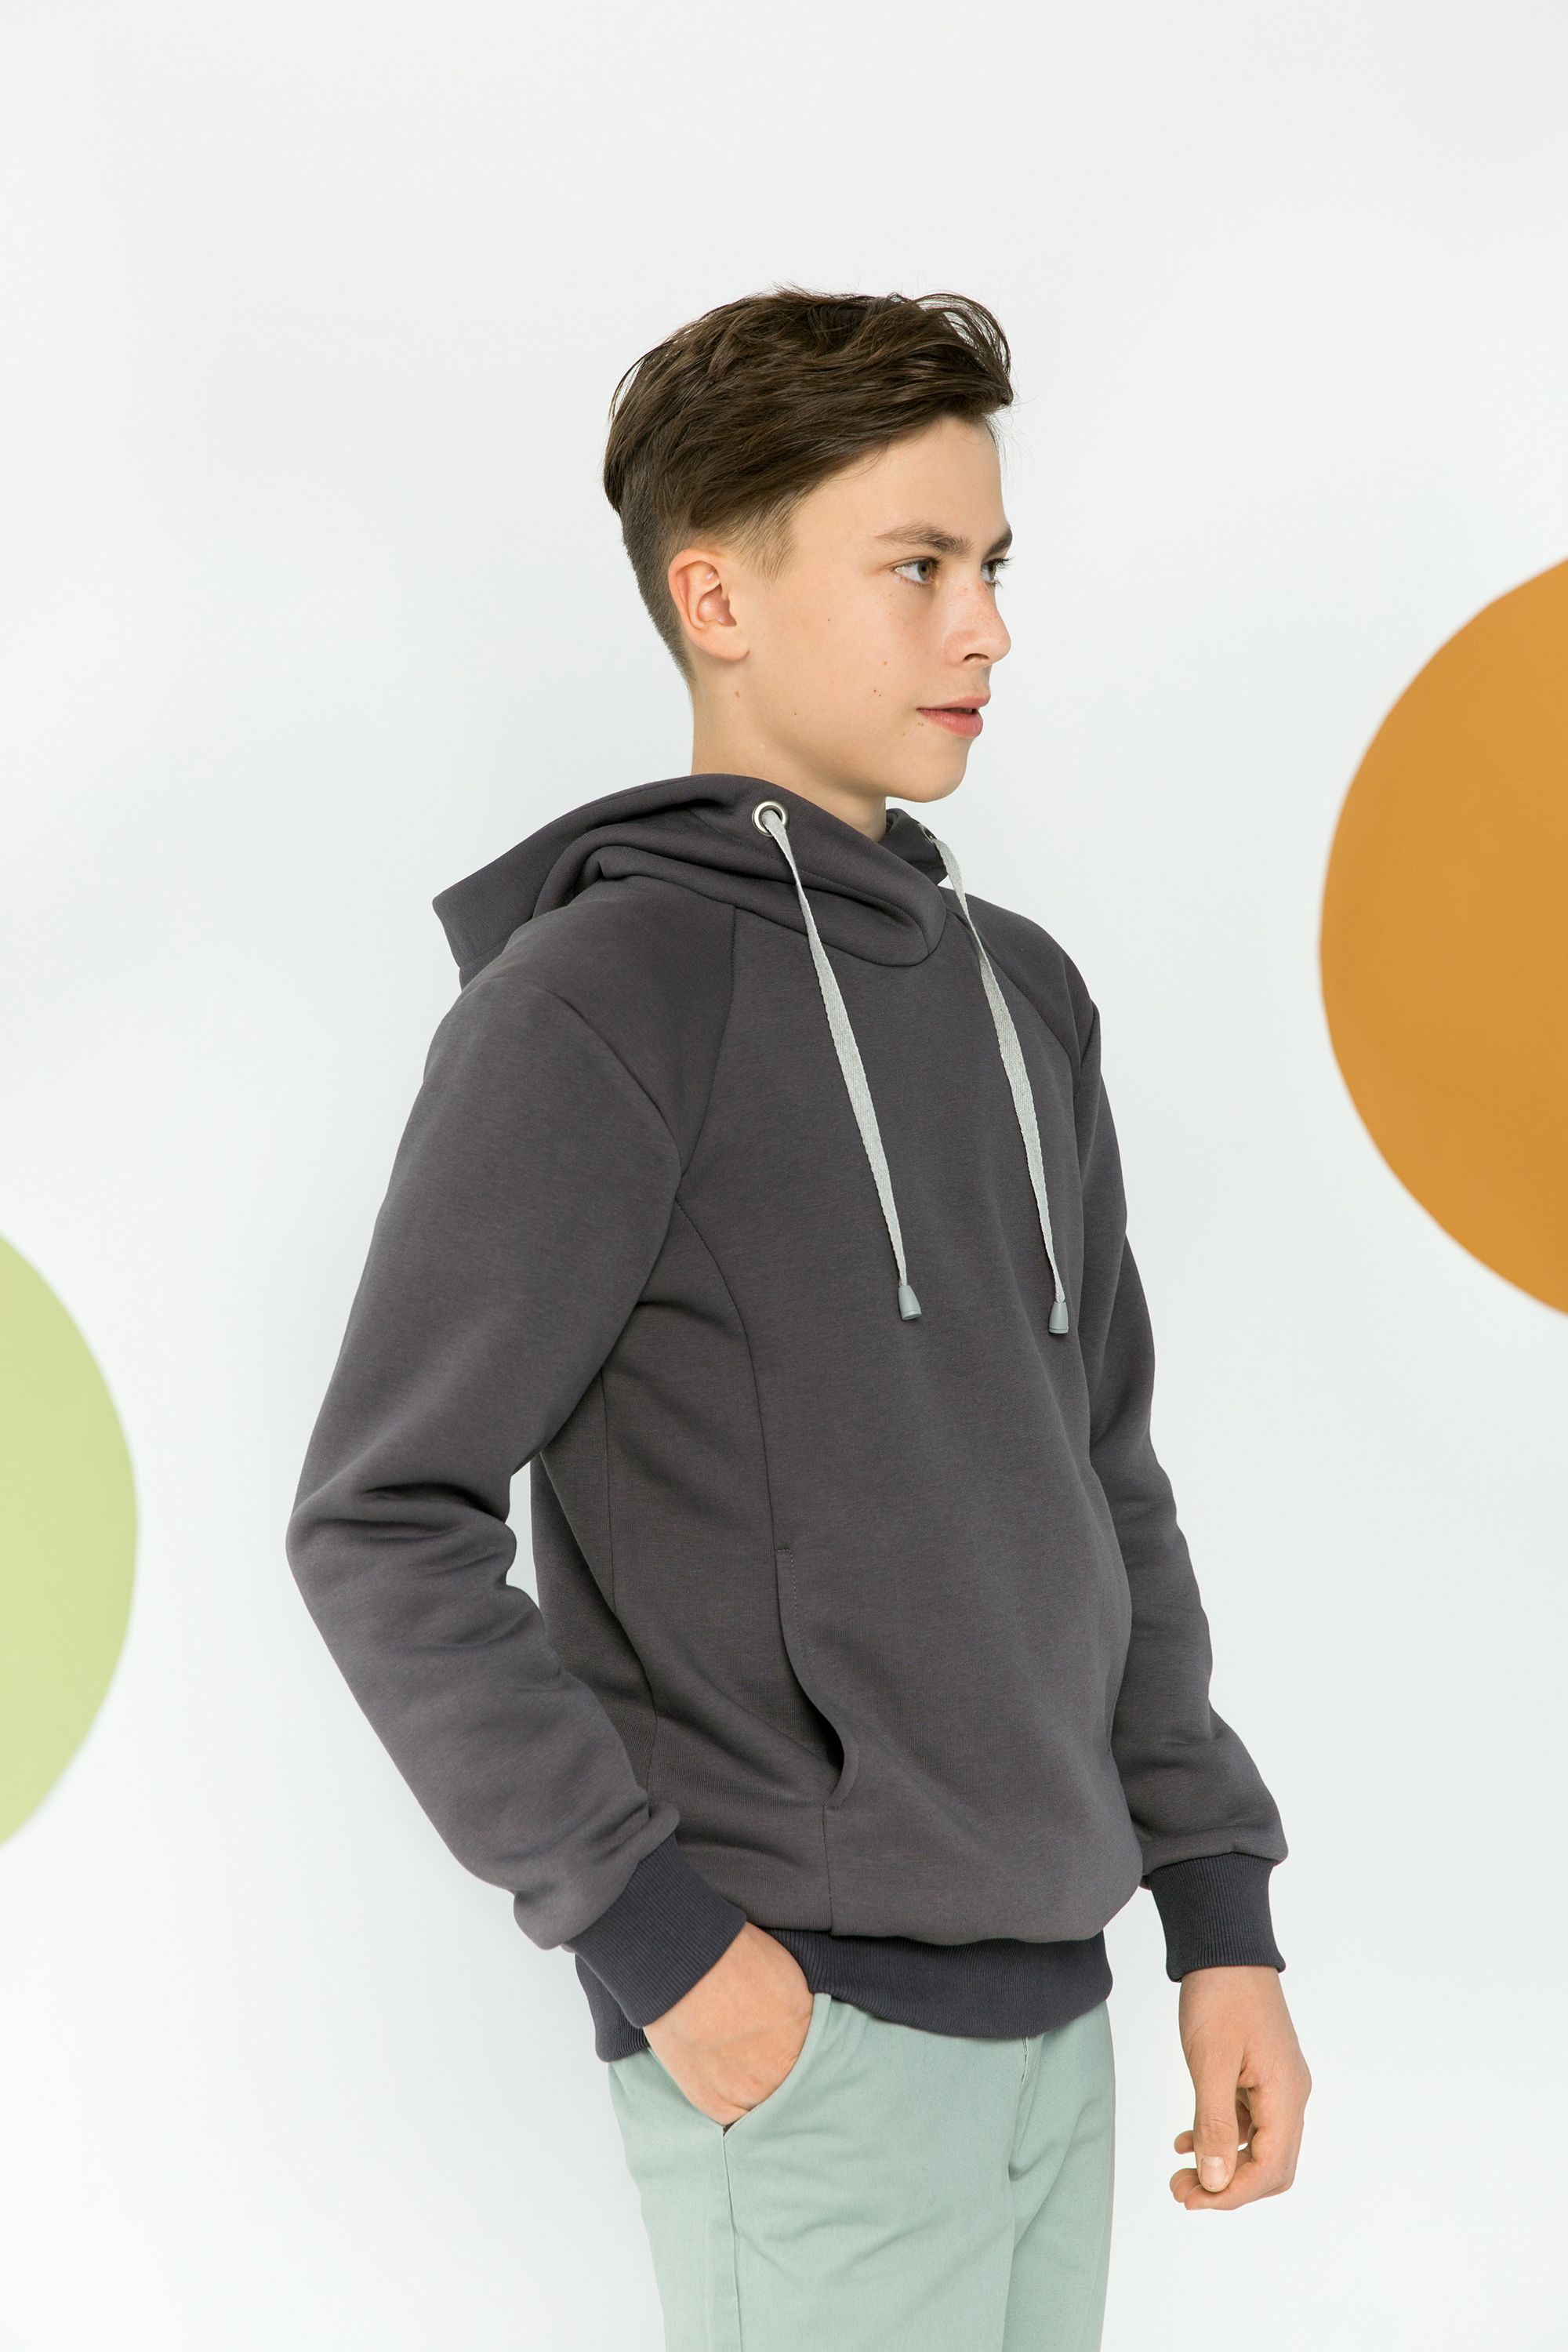 Kid's hoodie and sweatshirt, pattern №803 order and download in PDF